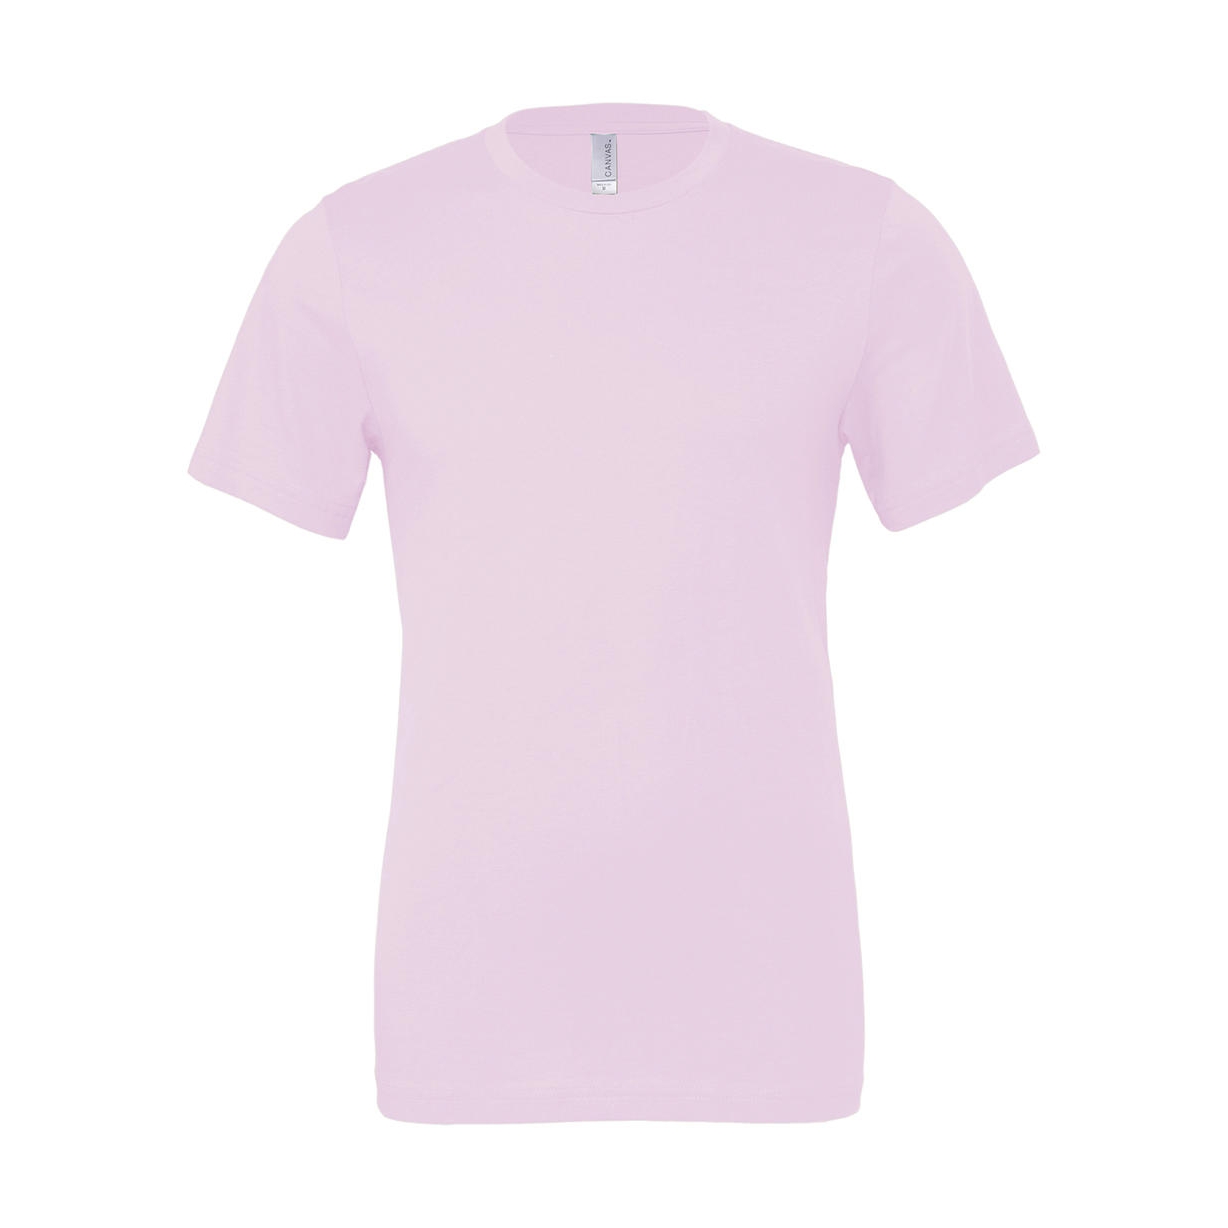 Tričko Bella Jersey - světle růžové, M